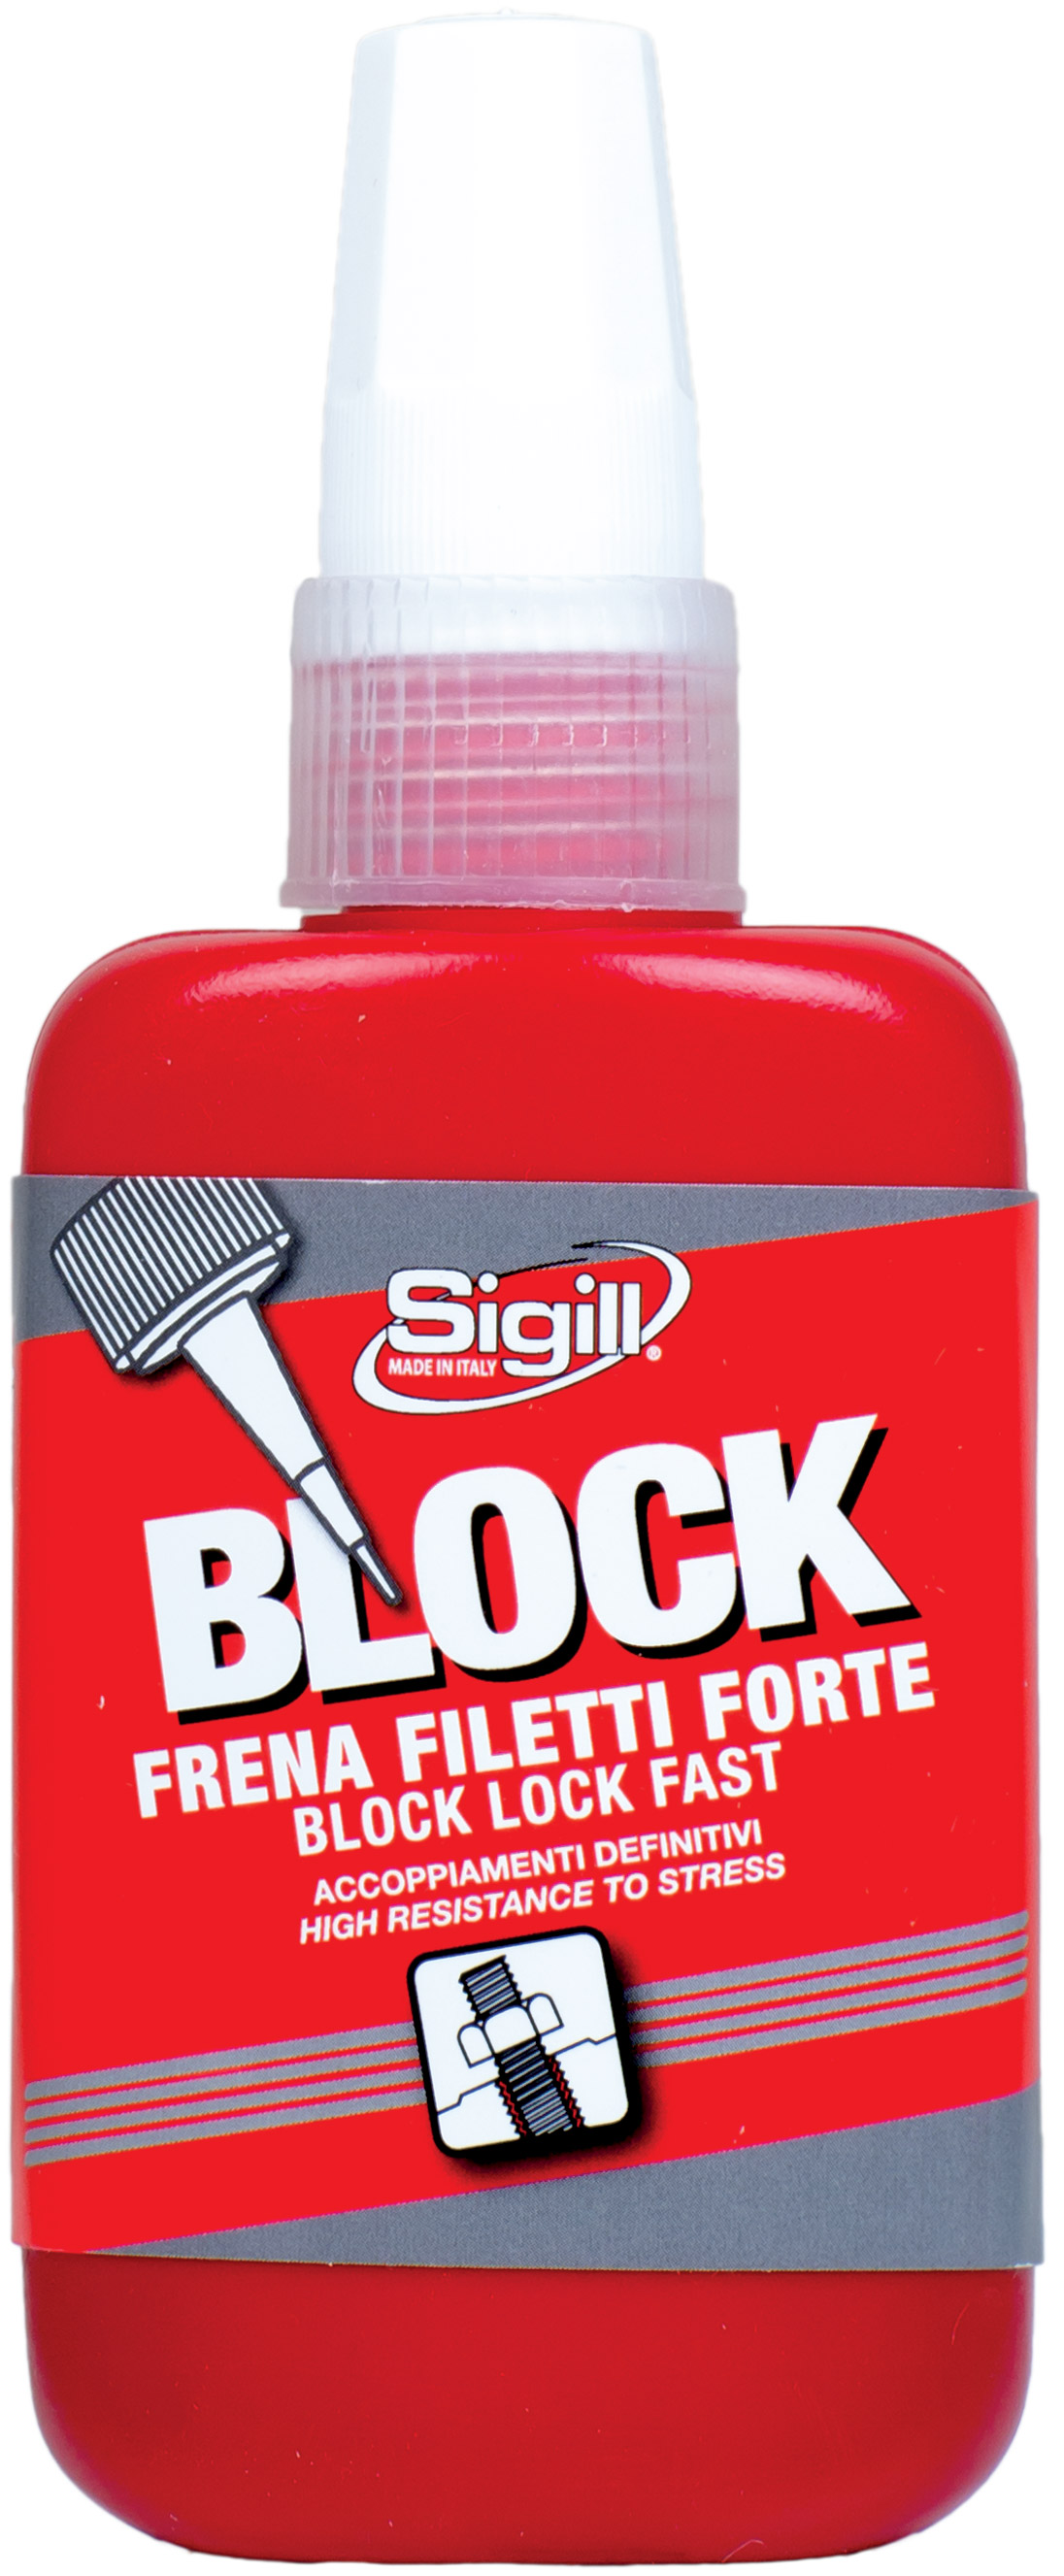 Block Frenafiletti Forte - NPT